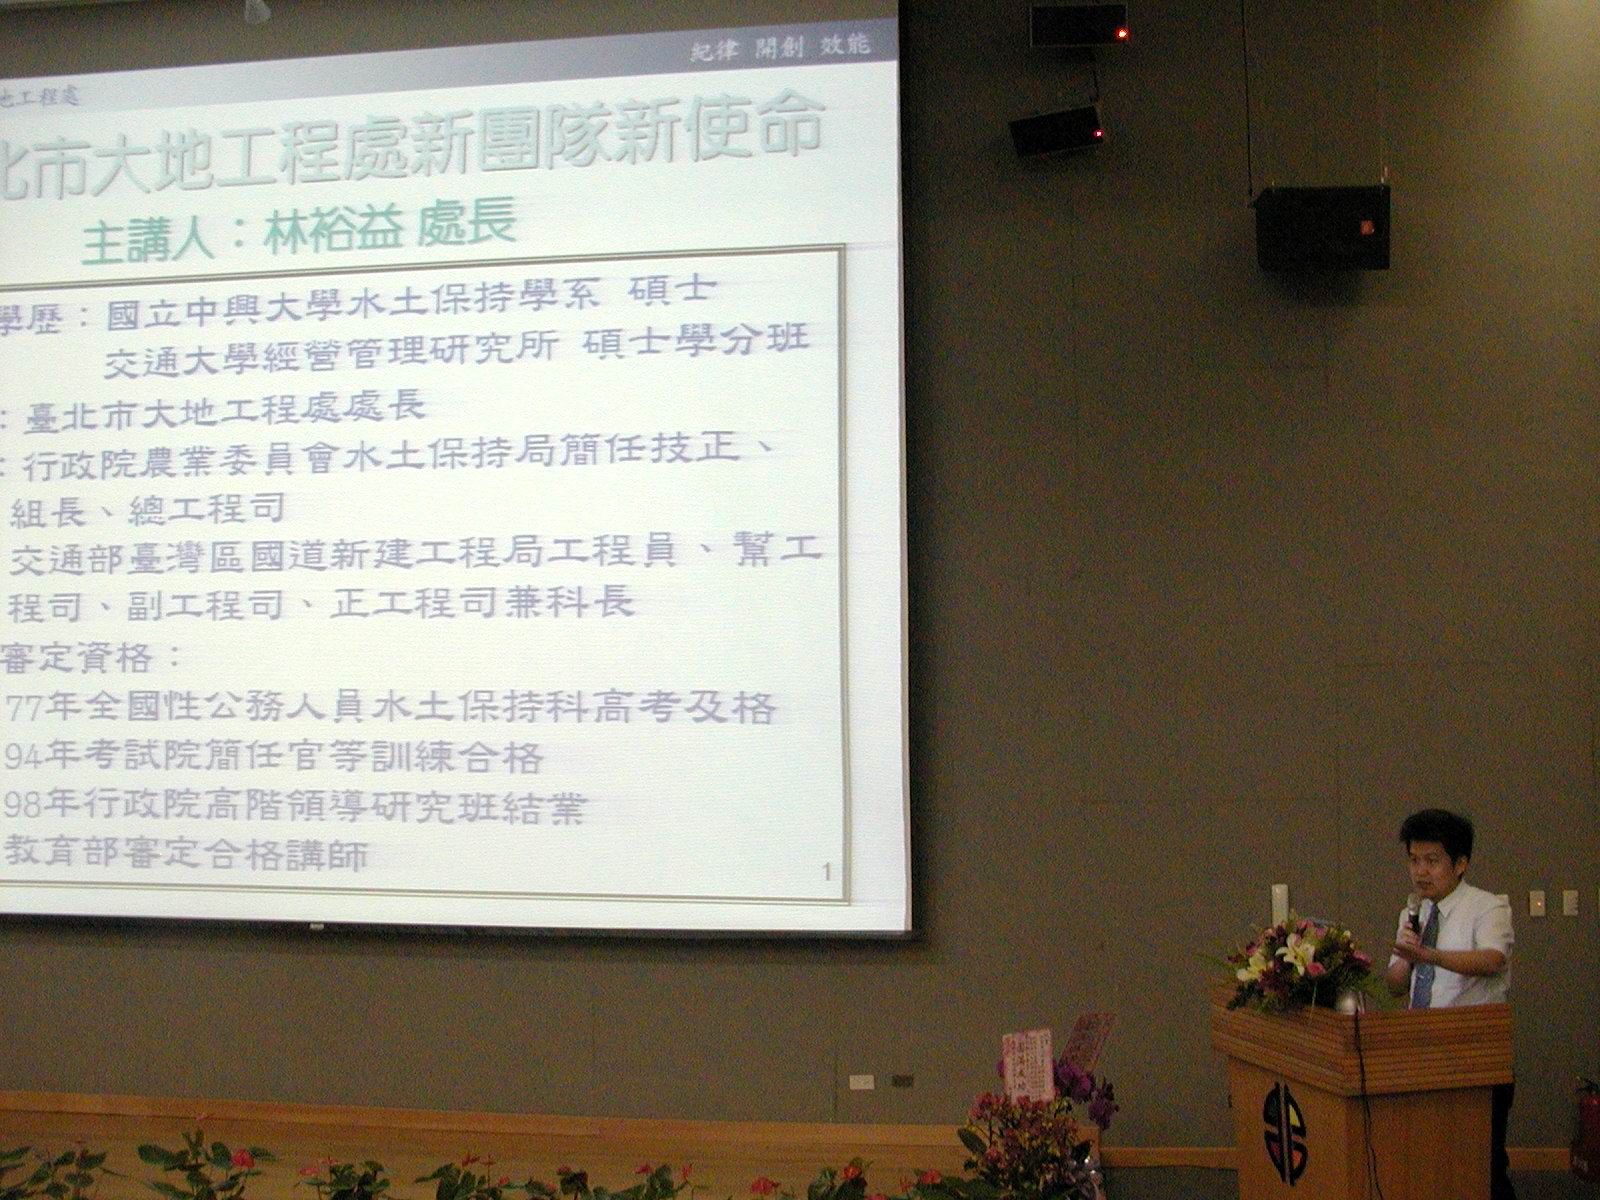 水利工程技術研討會-臺北市大地工程處林裕益處長演講